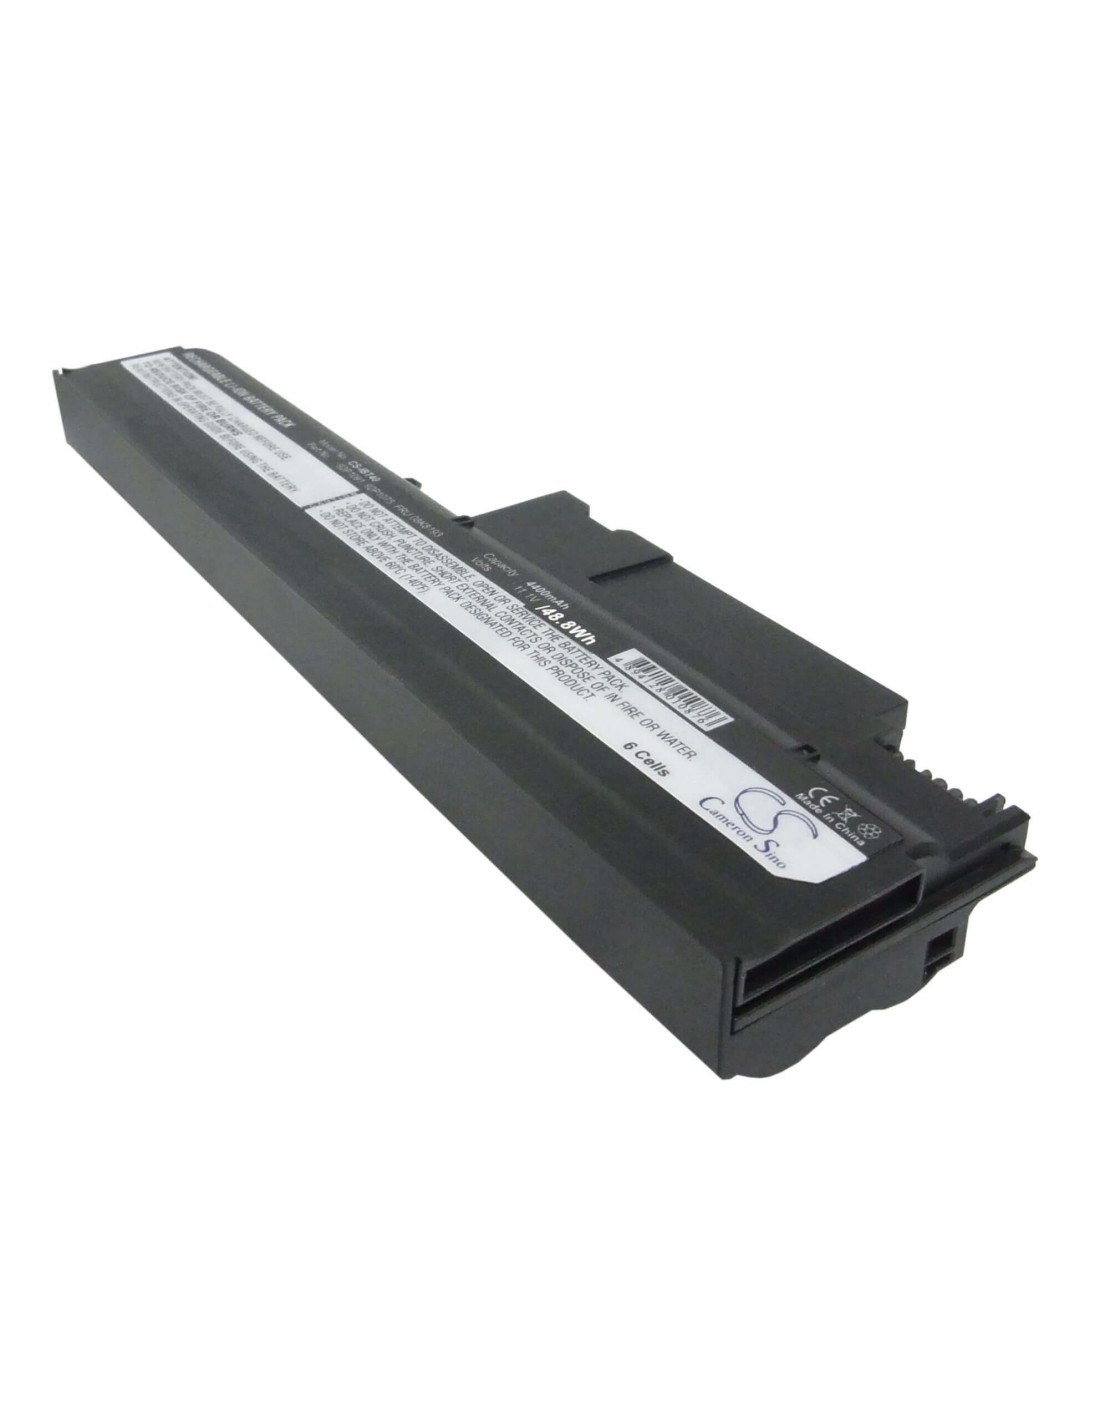 Black Battery for Ibm Thinkpad R51e-1848, Thinkpad R50p 1830, Thinkpad R50p1836 10.8V, 4400mAh - 47.52Wh